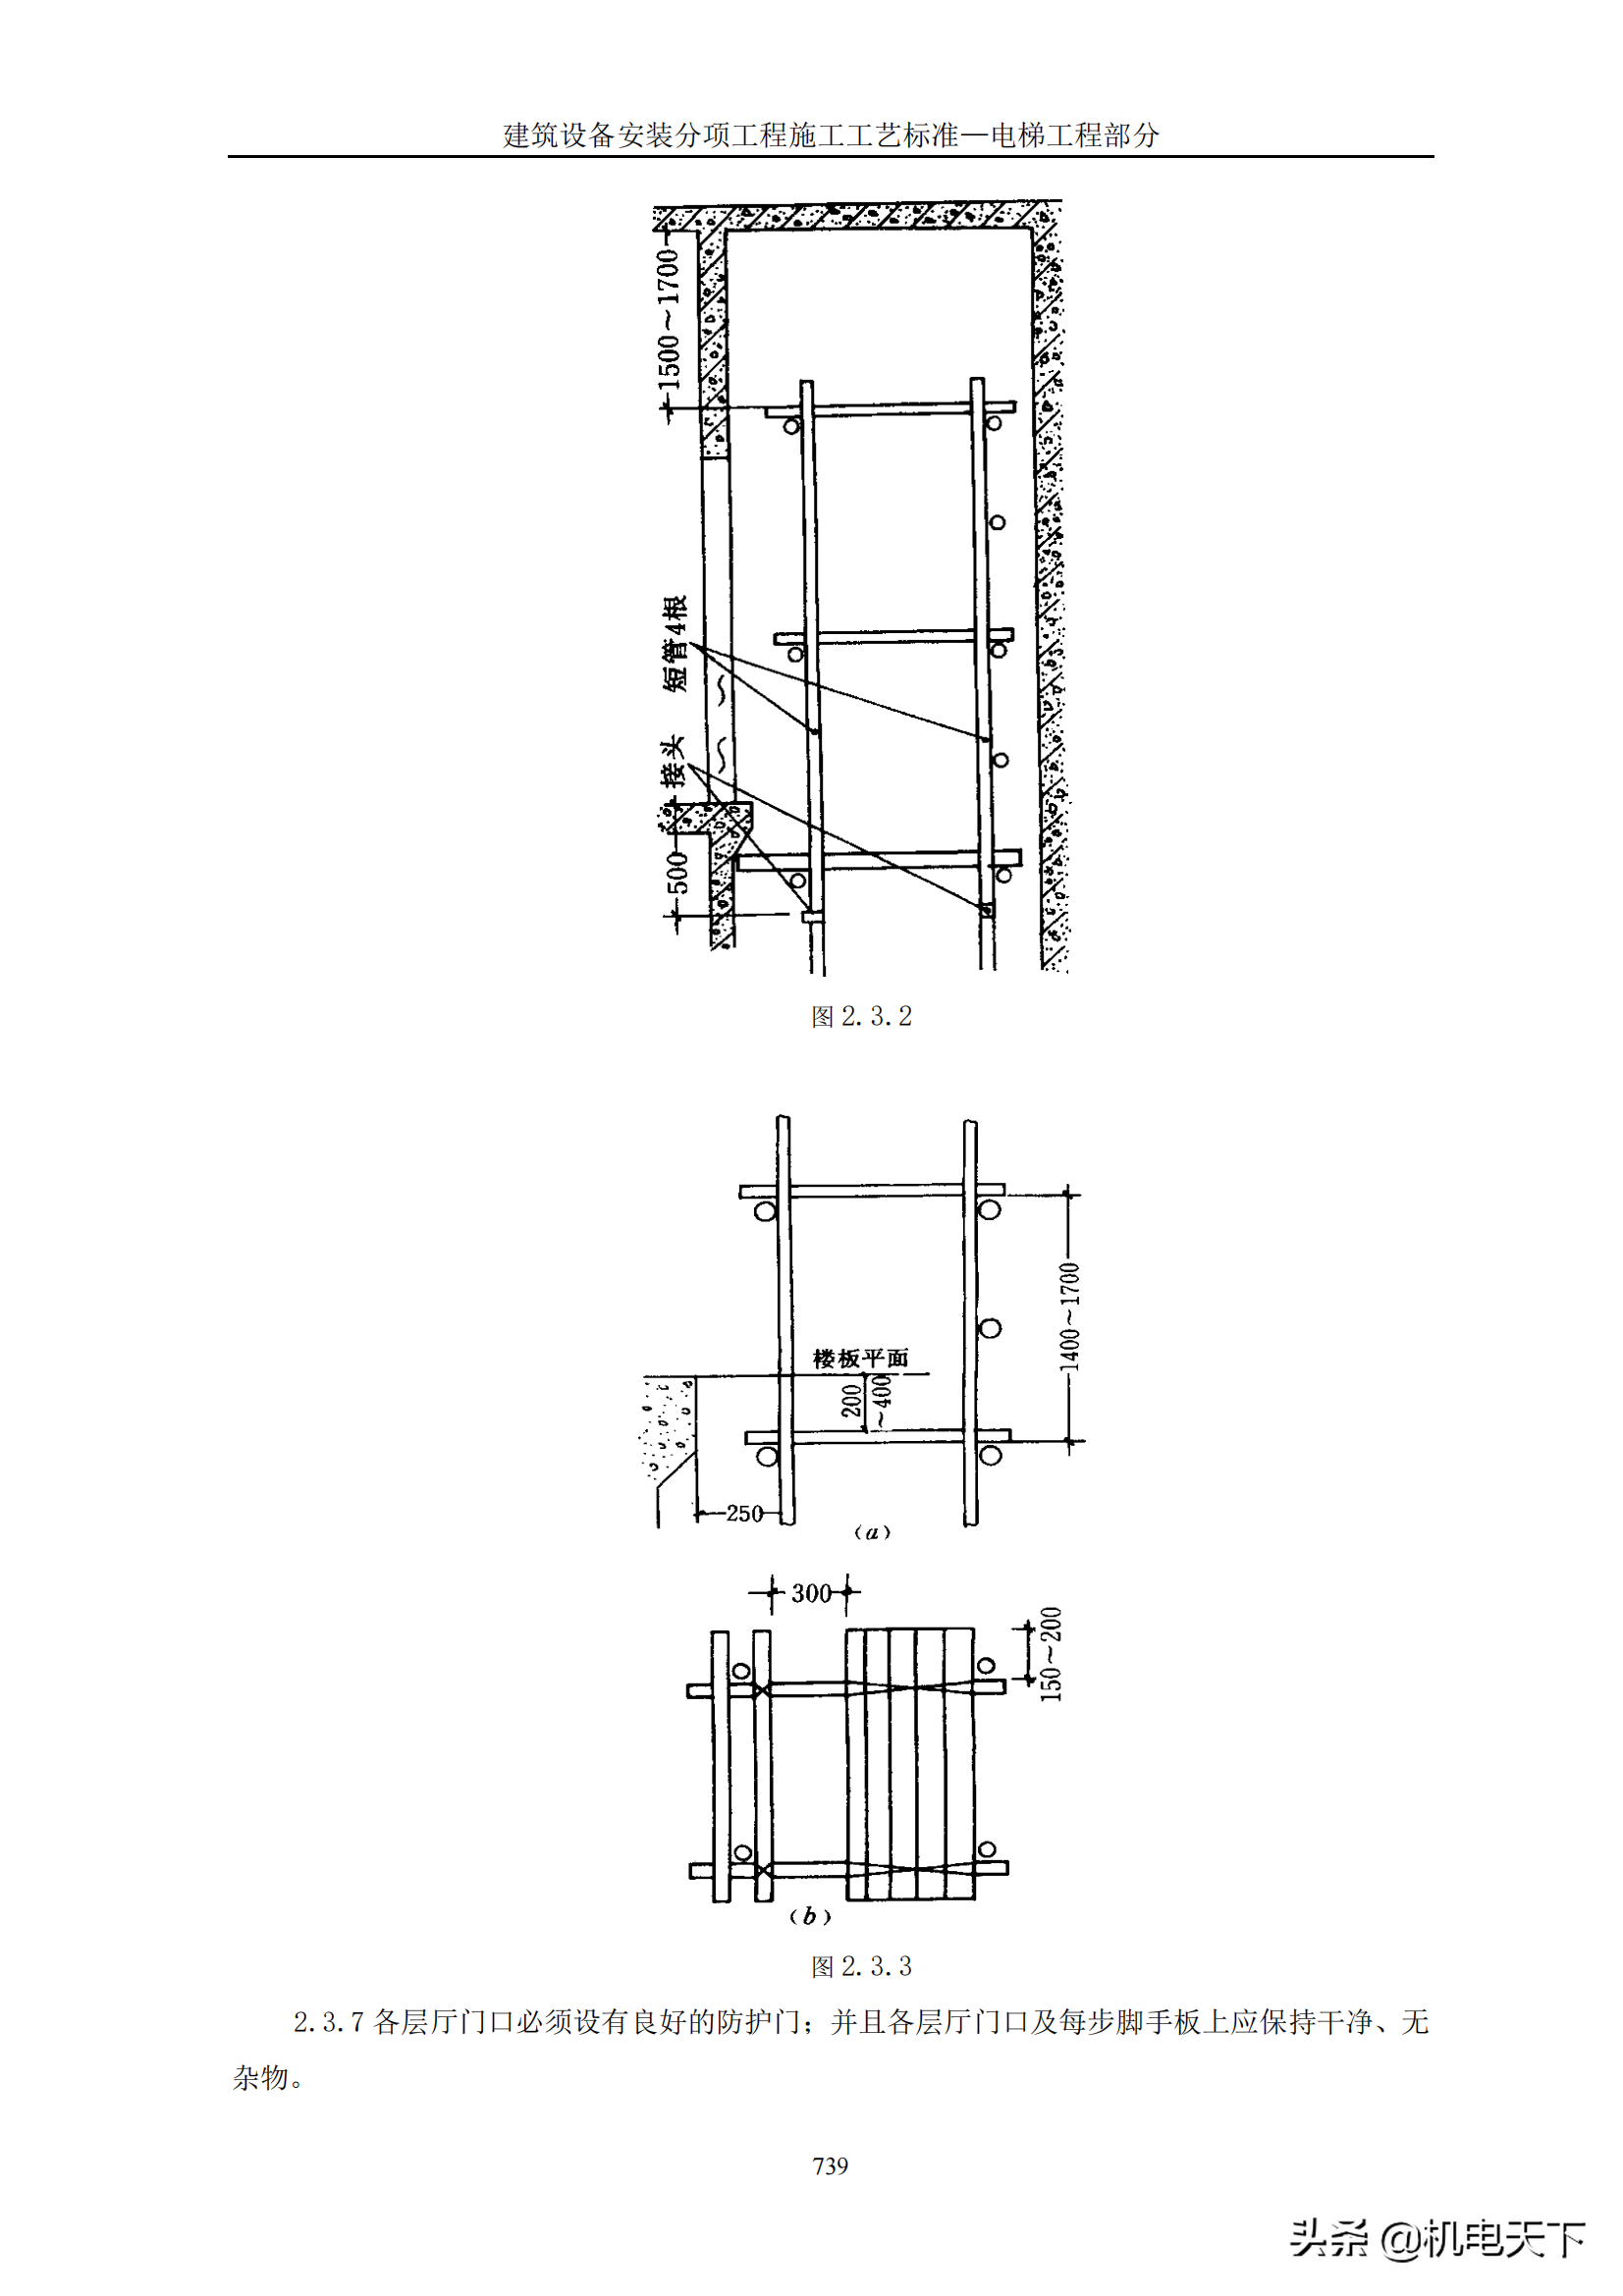 建筑设备安装分项工程施工工艺标准—电梯工程部分